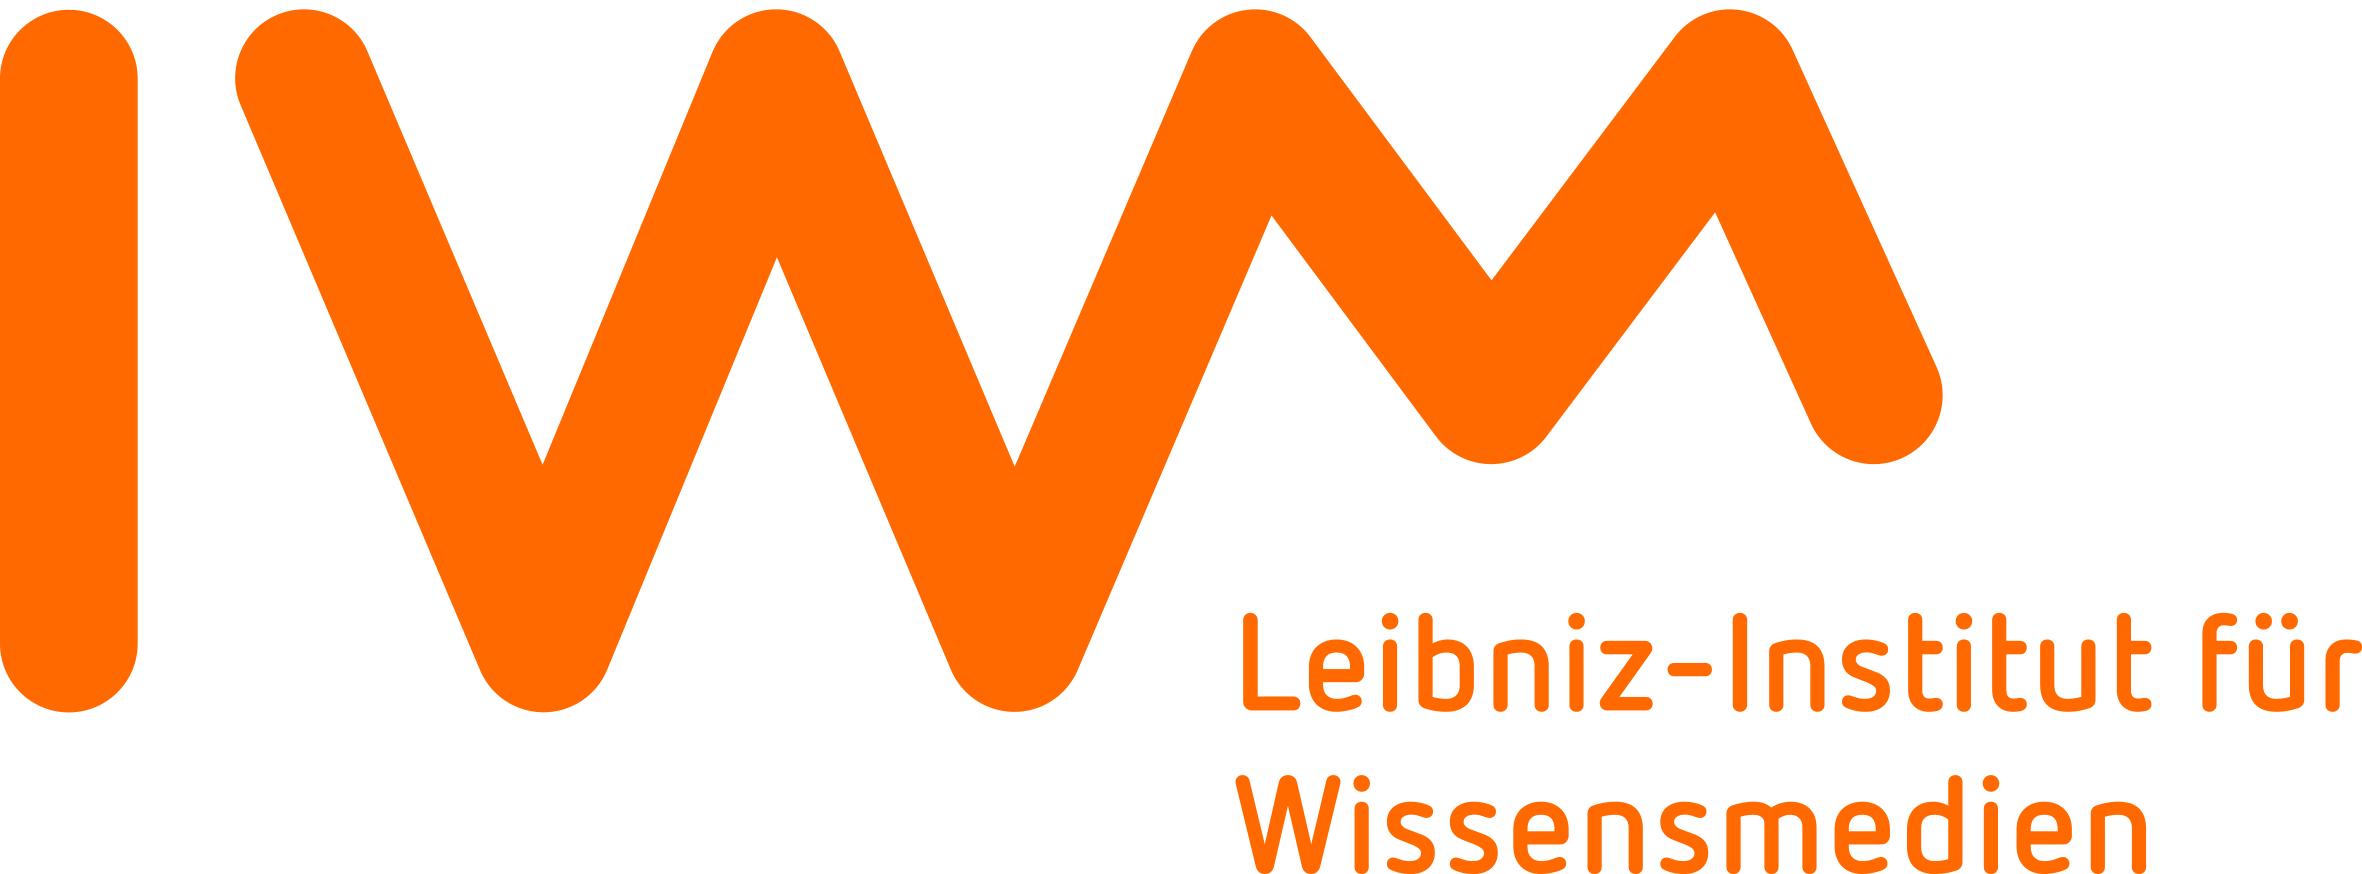 Leibniz Institut für Wissensmedien (IWM)